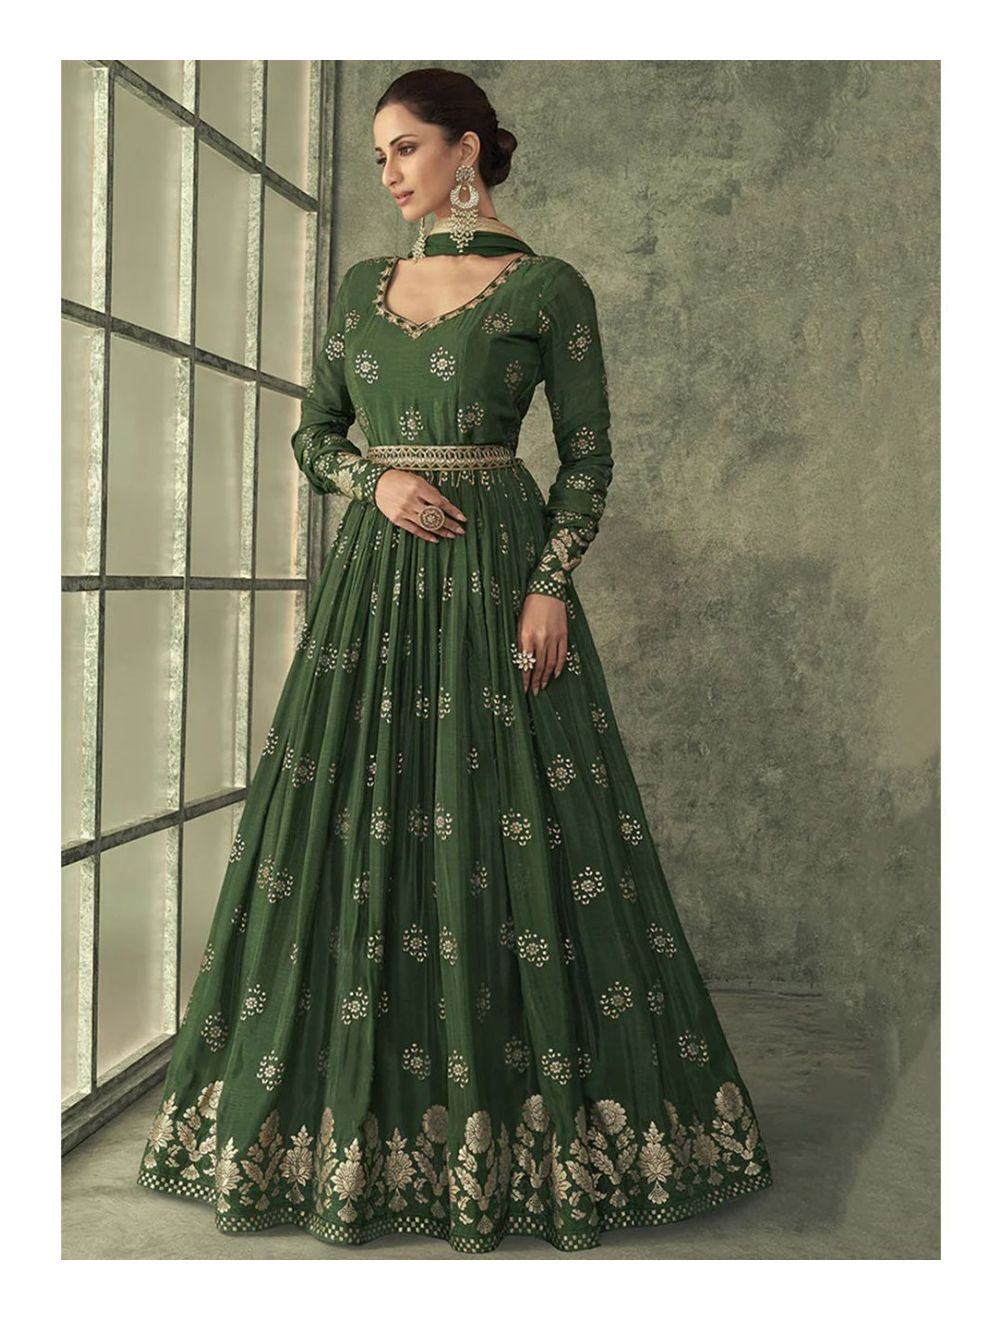 Cotton Anarkali Dresses - Buy Cotton Anarkali Dresses online in India